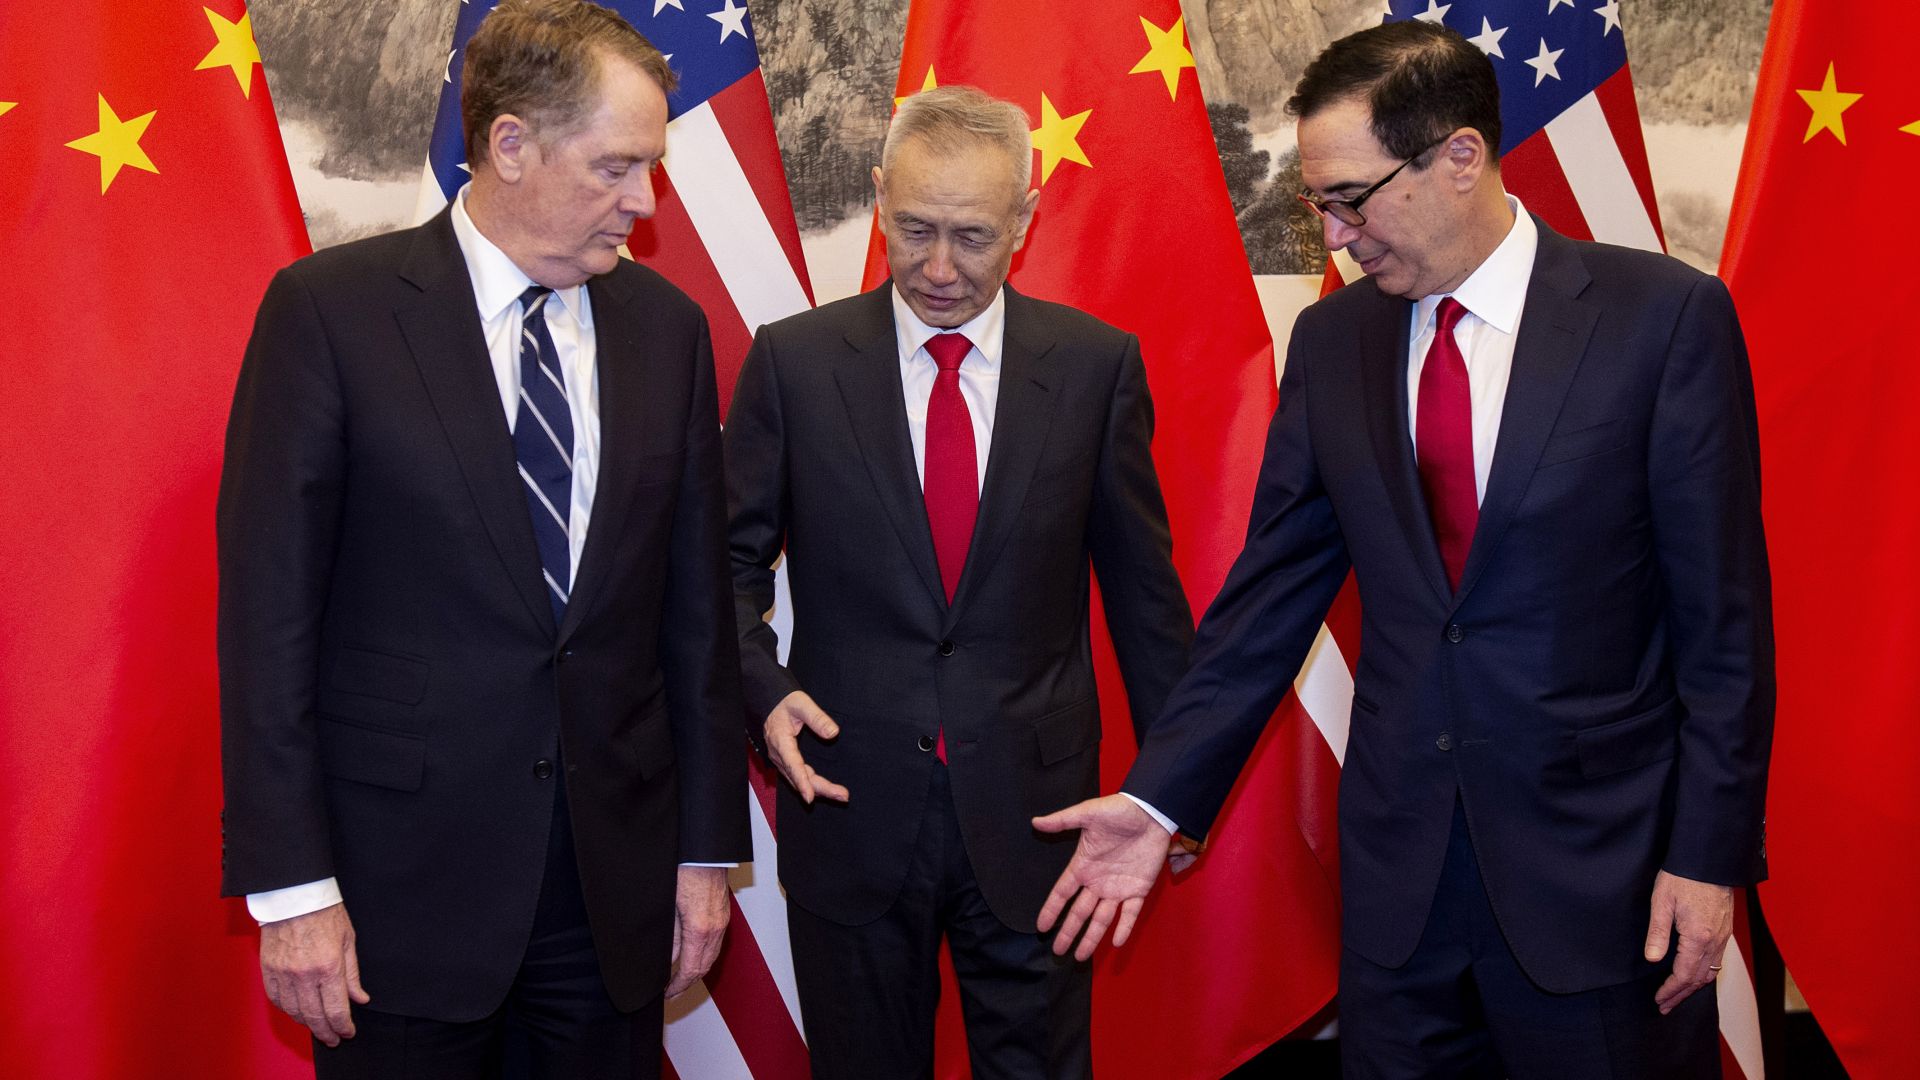 САЩ и Китай възобновяват търговските преговори